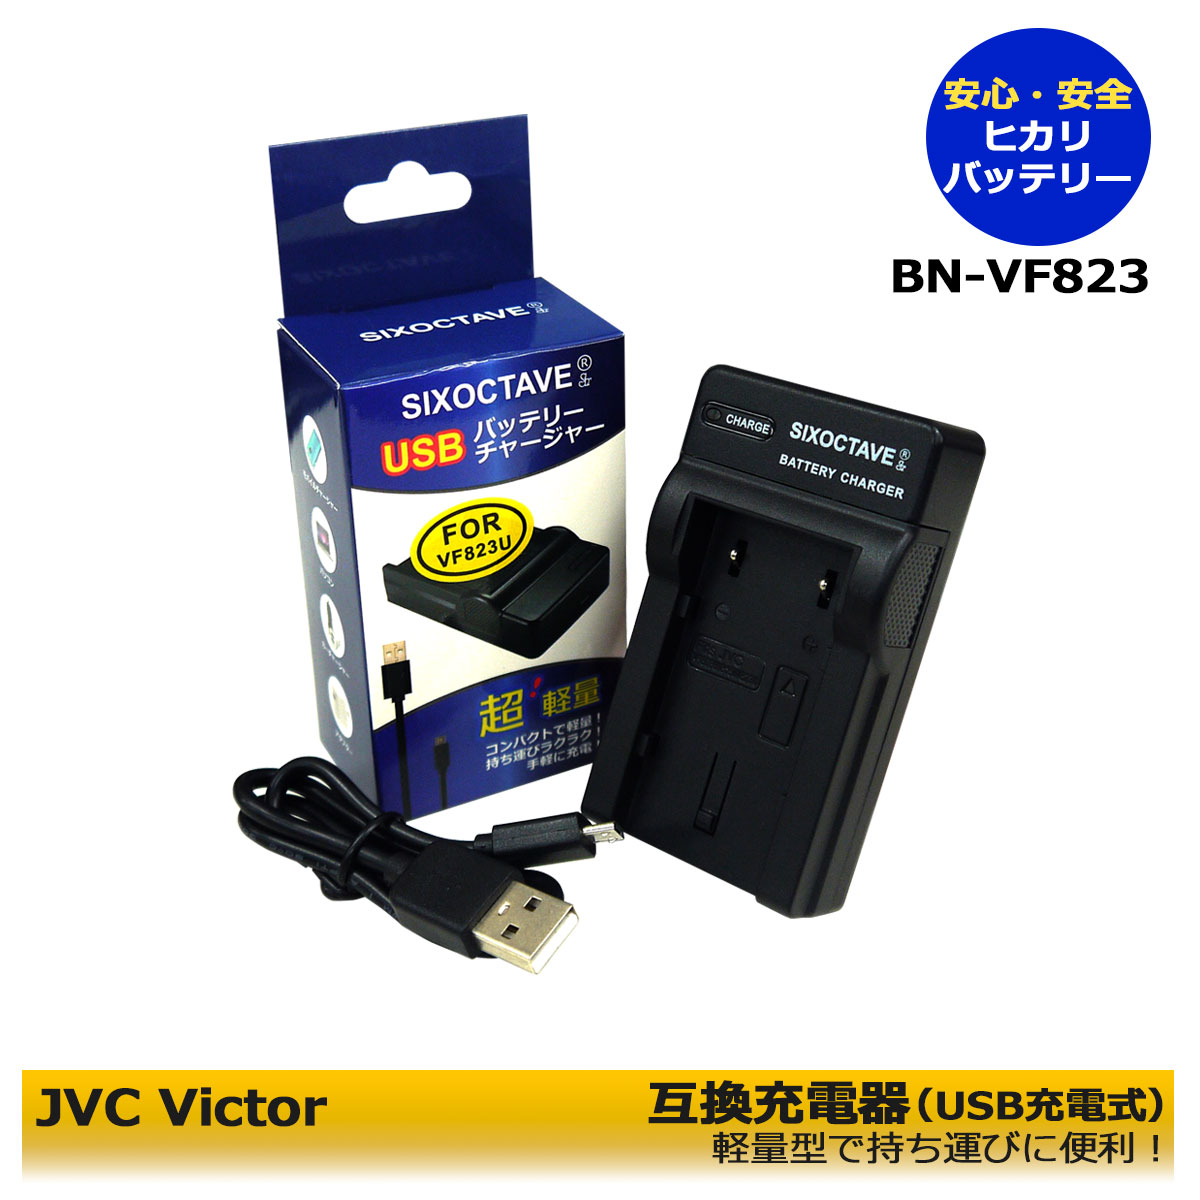 日本ビクターJVC 【あす楽対応】JVC AA-VF8 対応 互換USB充電器 BN-VF823 BN-VF808 BN-VF908 等GZ-MG262/GZ-HD5/GZ-HD7/MG880/GS-TD1/G..